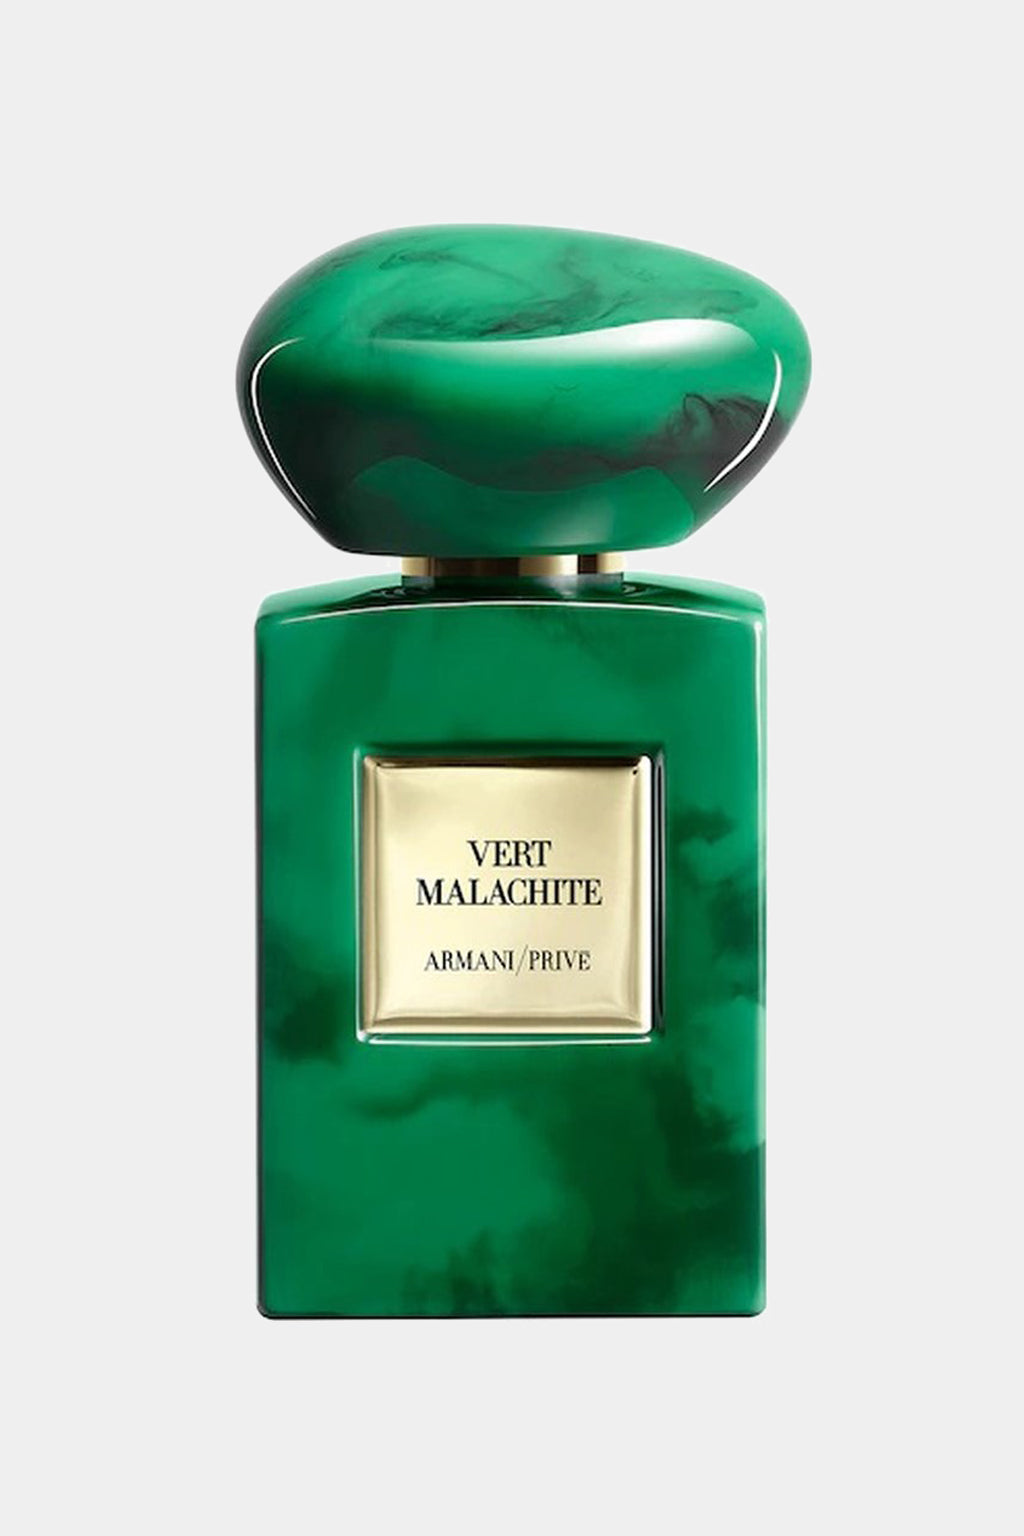 Armani - Privé Vert Malachite Eau de Parfum